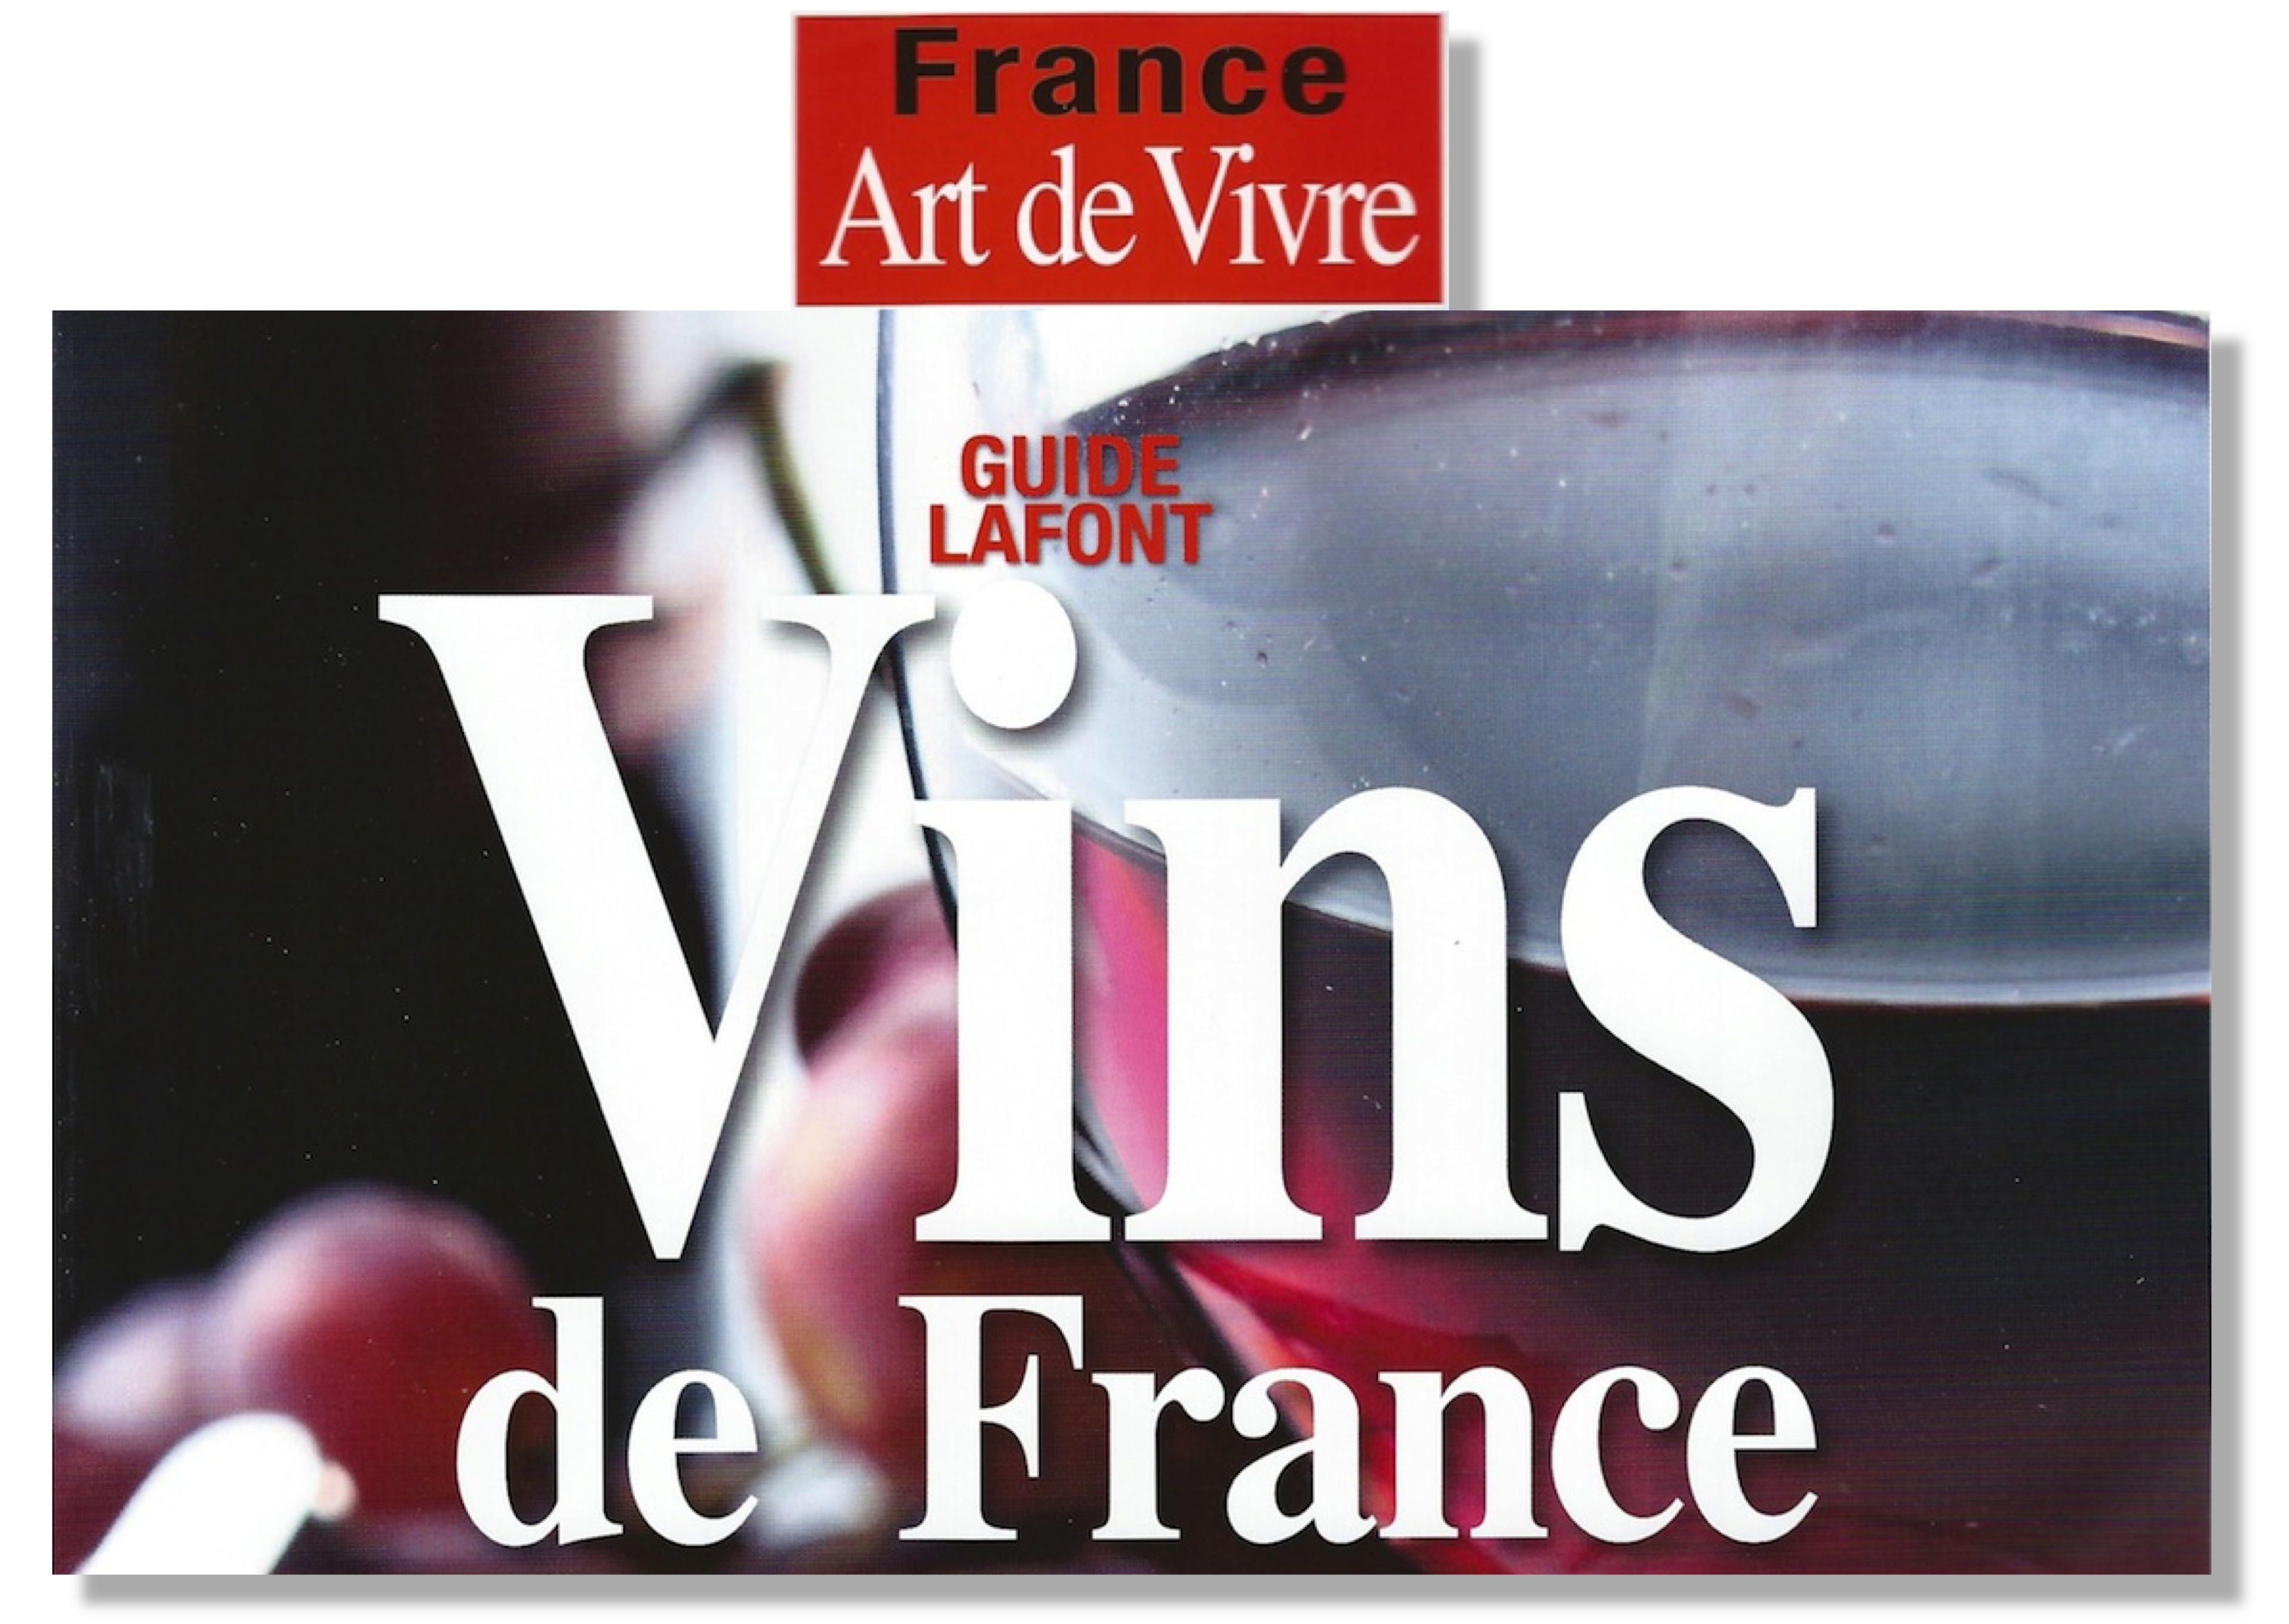 La Peira’s Matissat named the Best Red Wine of France in the Lafont Presse 'Classement des Meilleurs Vins de France' 2014 La Peira